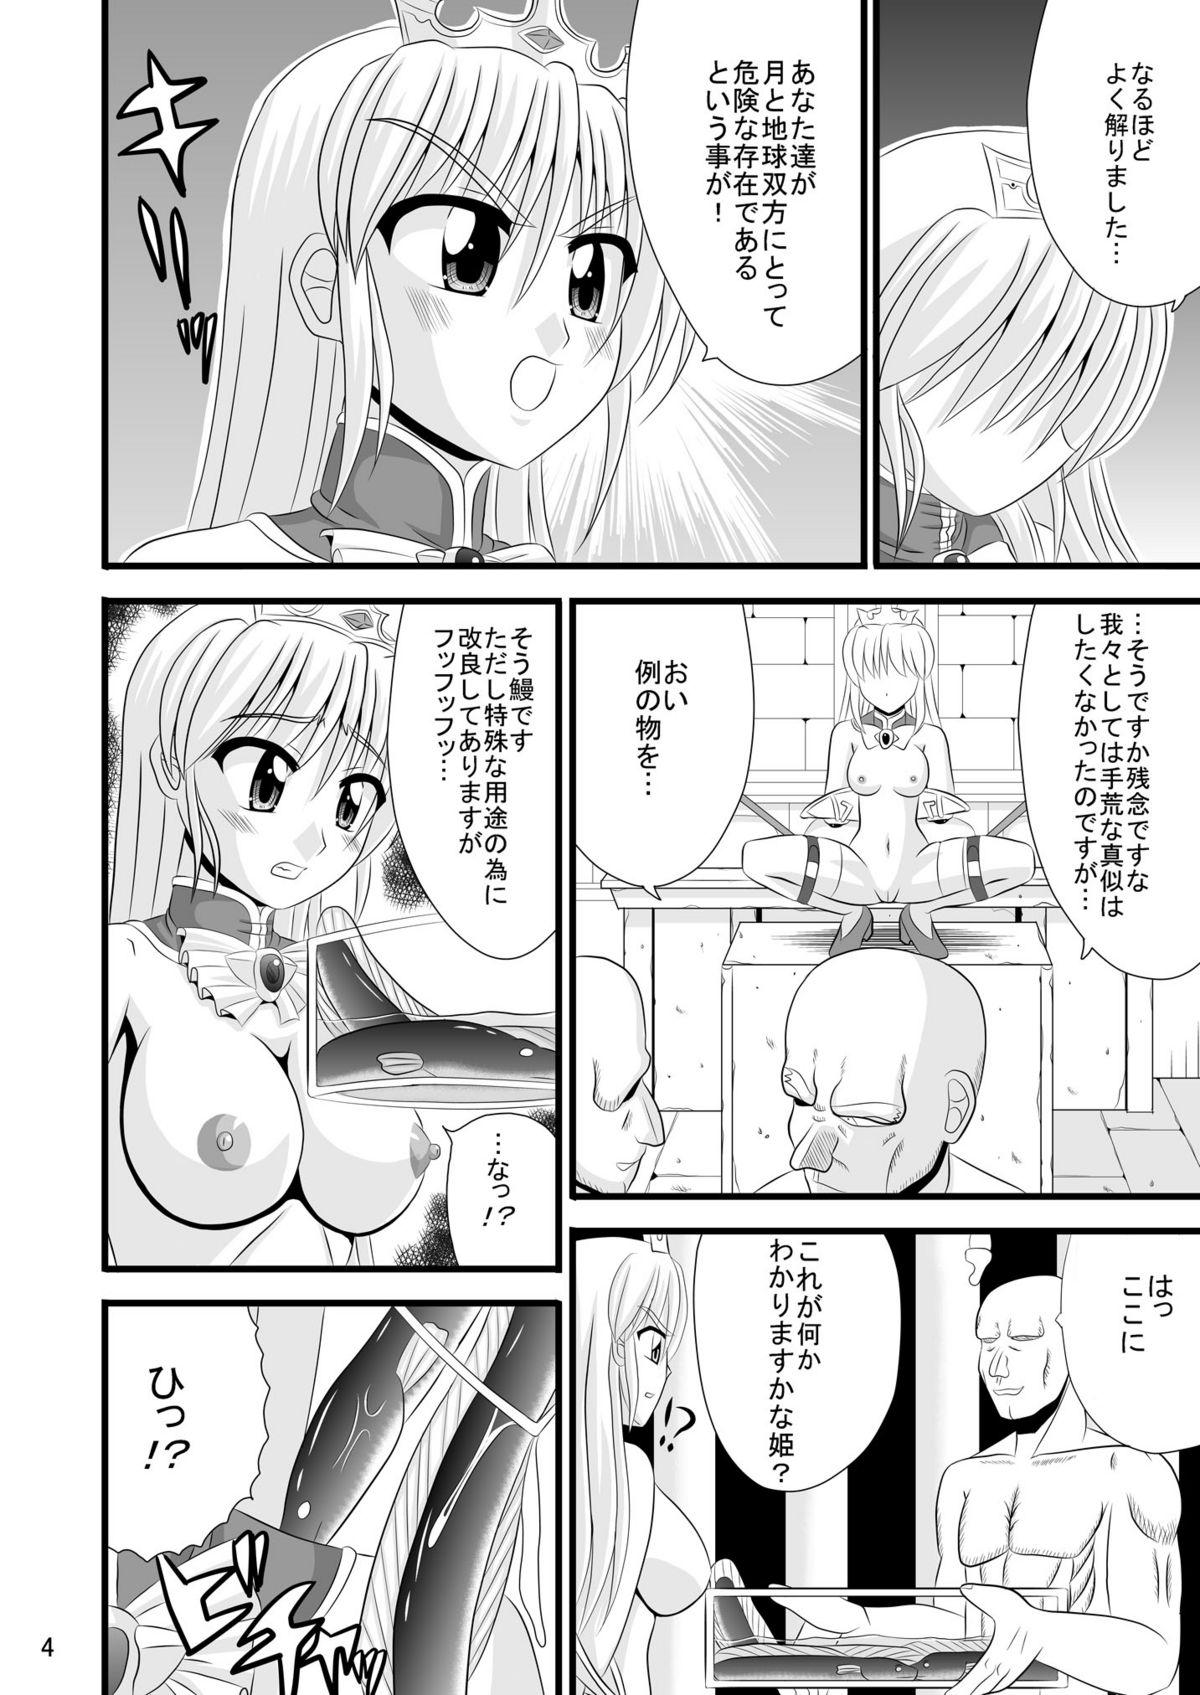 Pov Sex Chijoku no Saidan - Yoake mae yori ruriiro na Doggy Style - Page 4